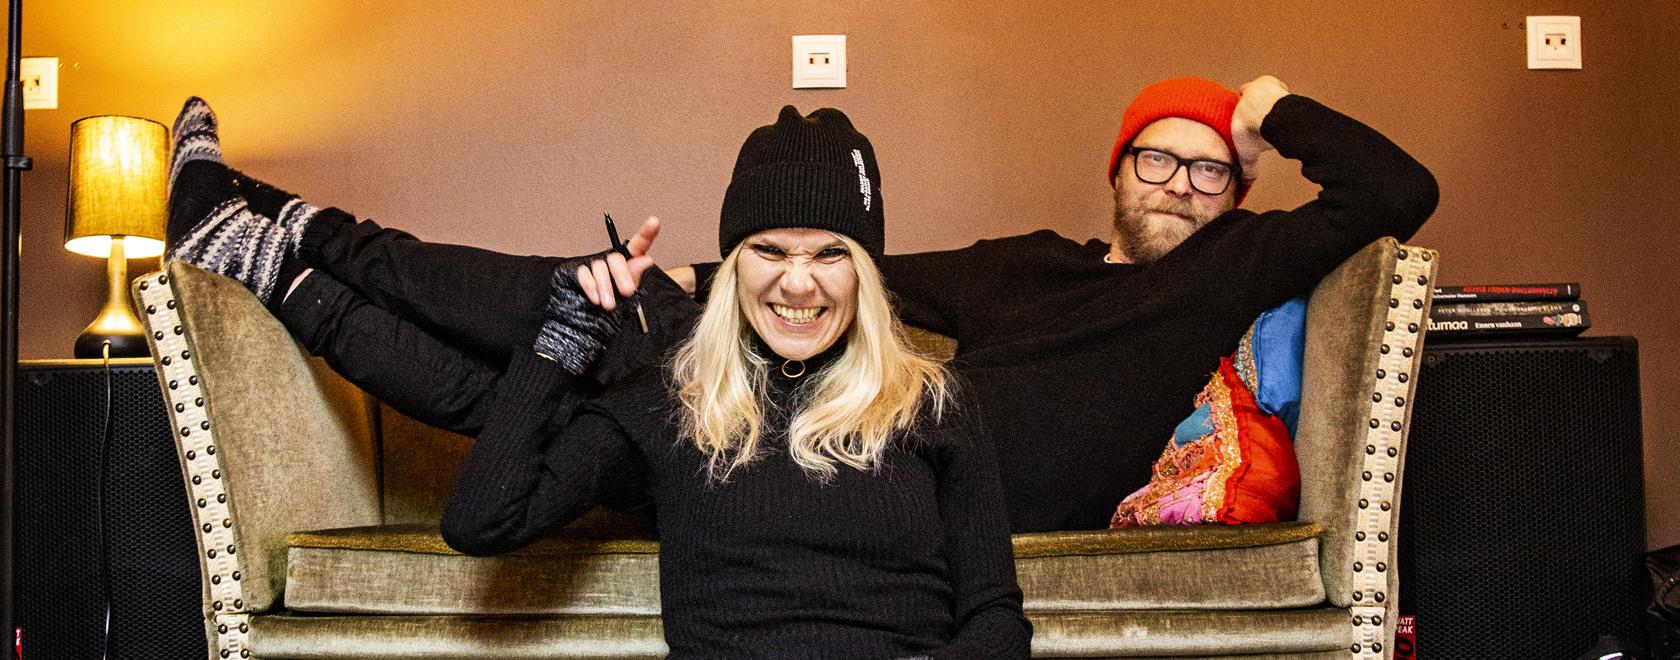 Musiikin ammattilaiset Valtteri Lipasti ja Nina Erjossaari järjestävät biisipajoja nuorille antaakseen heille mahdollisuuden tulla kuulluiksi. Kuva: Robert Seger